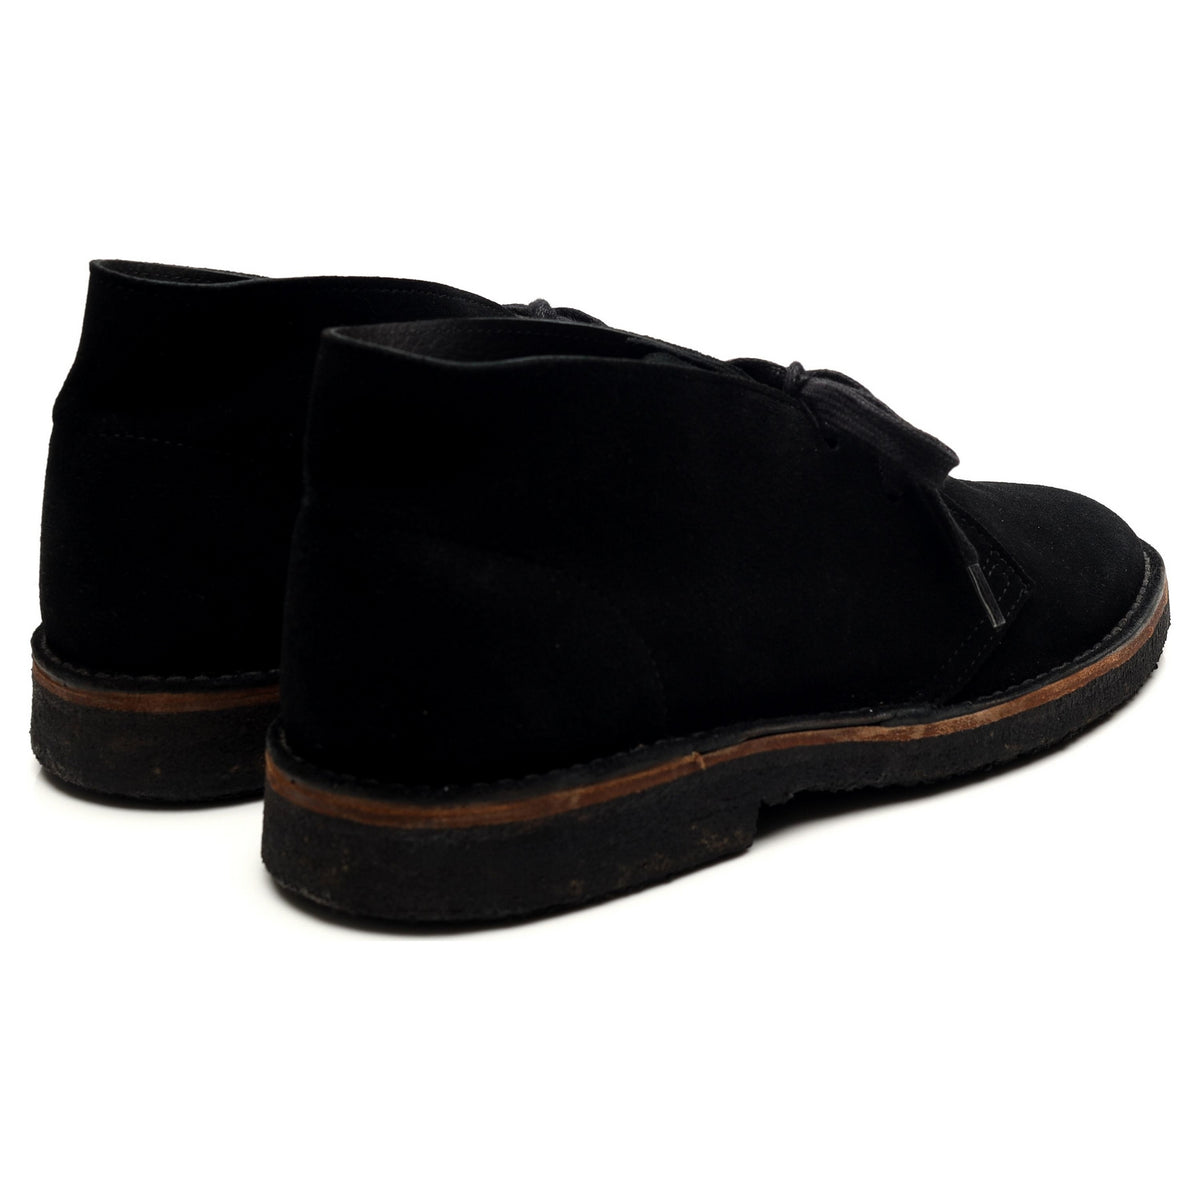 Black Suede Desert Boots UK 9